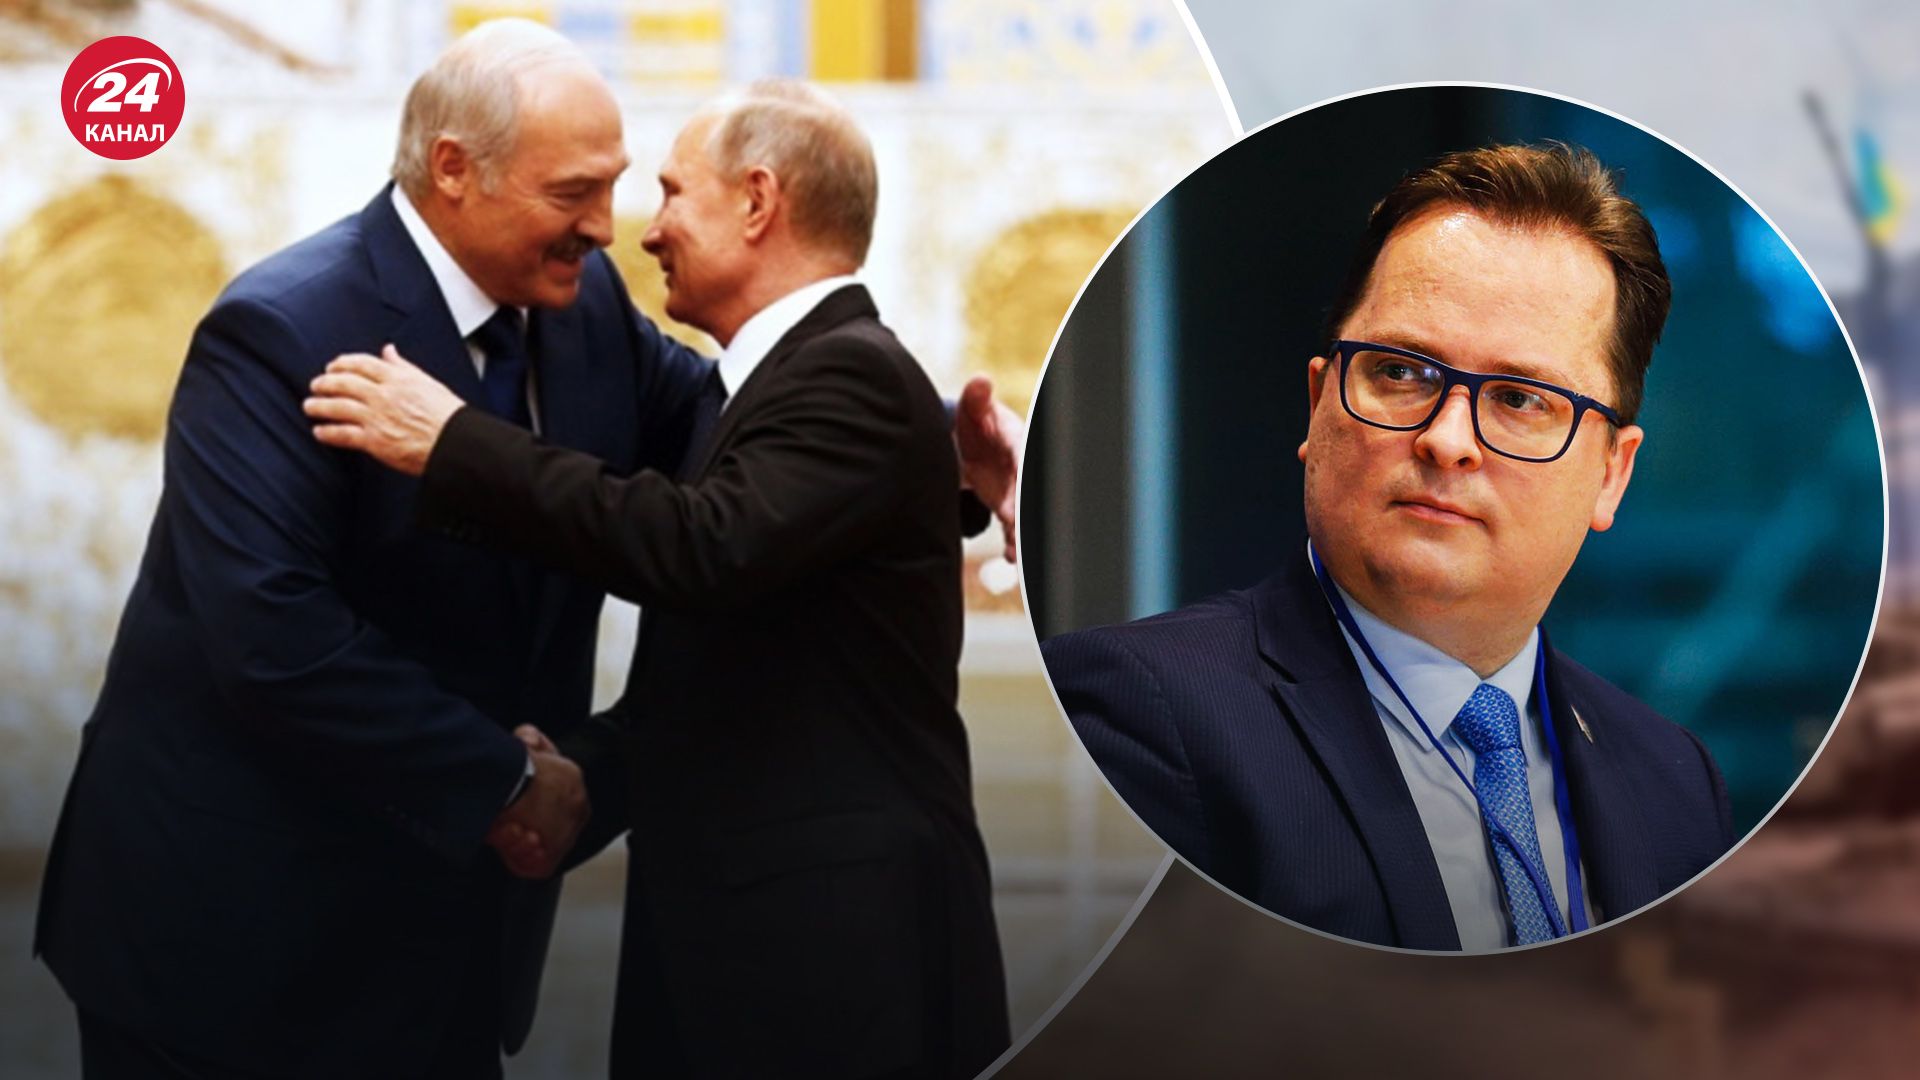 Цель Лукашенко и Путина - беларусский оппозиционер раскрыл суть - 24 Канал